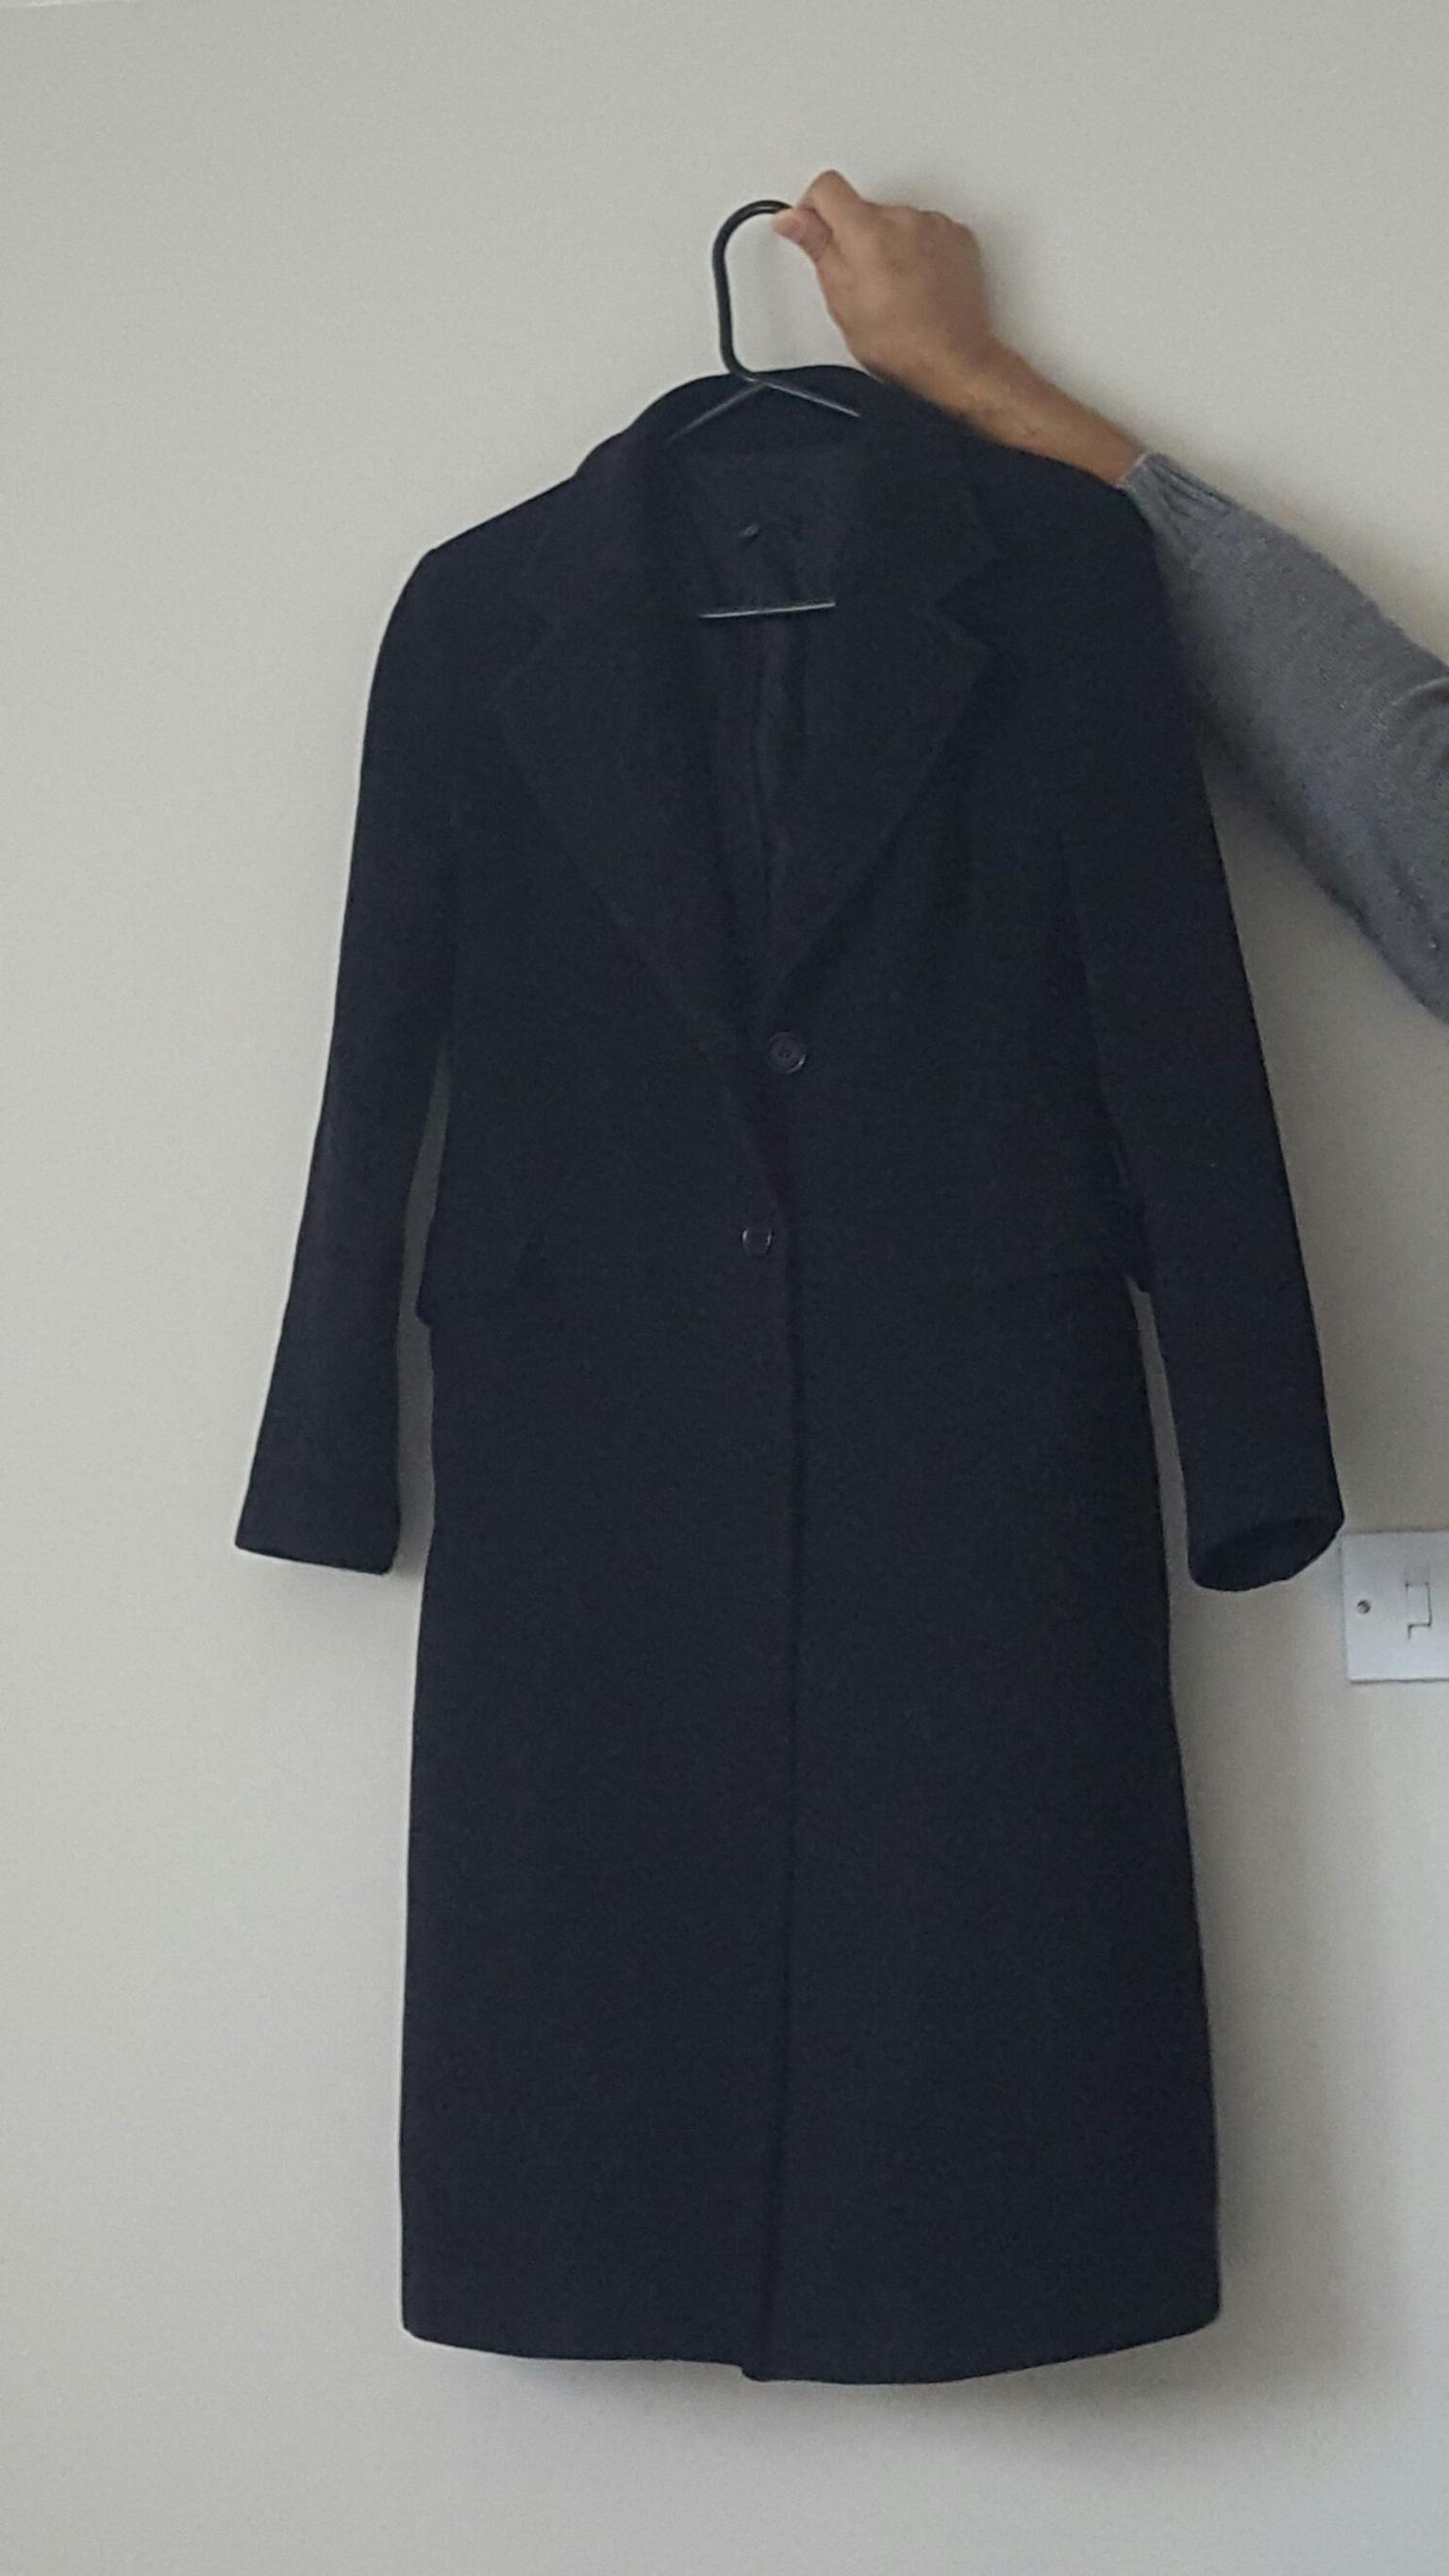 black women's coat zara